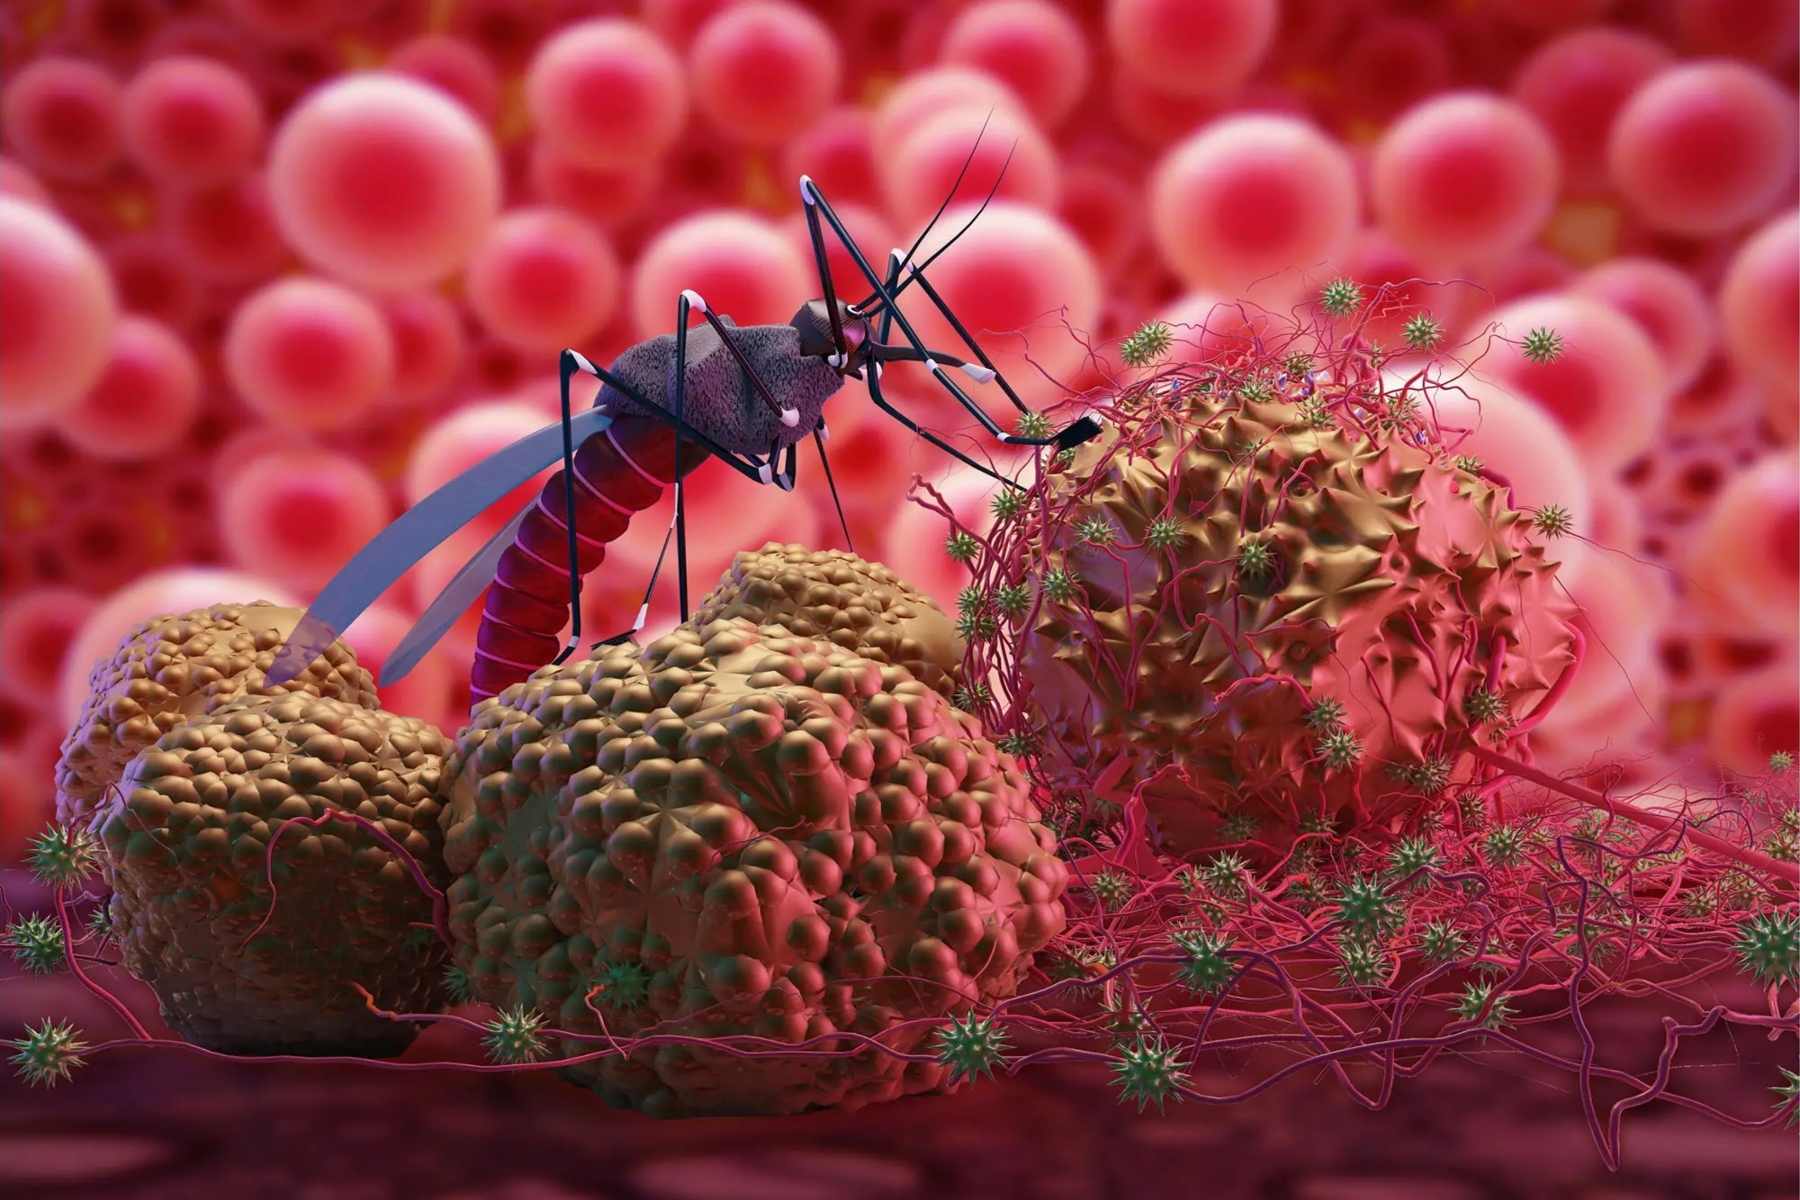 Ελονοσία ΗΠΑ: Το CDC προειδοποιεί για τα πρώτα τοπικά κρούσματα ελονοσίας στις ΗΠΑ τα τελευταία 20 χρόνια